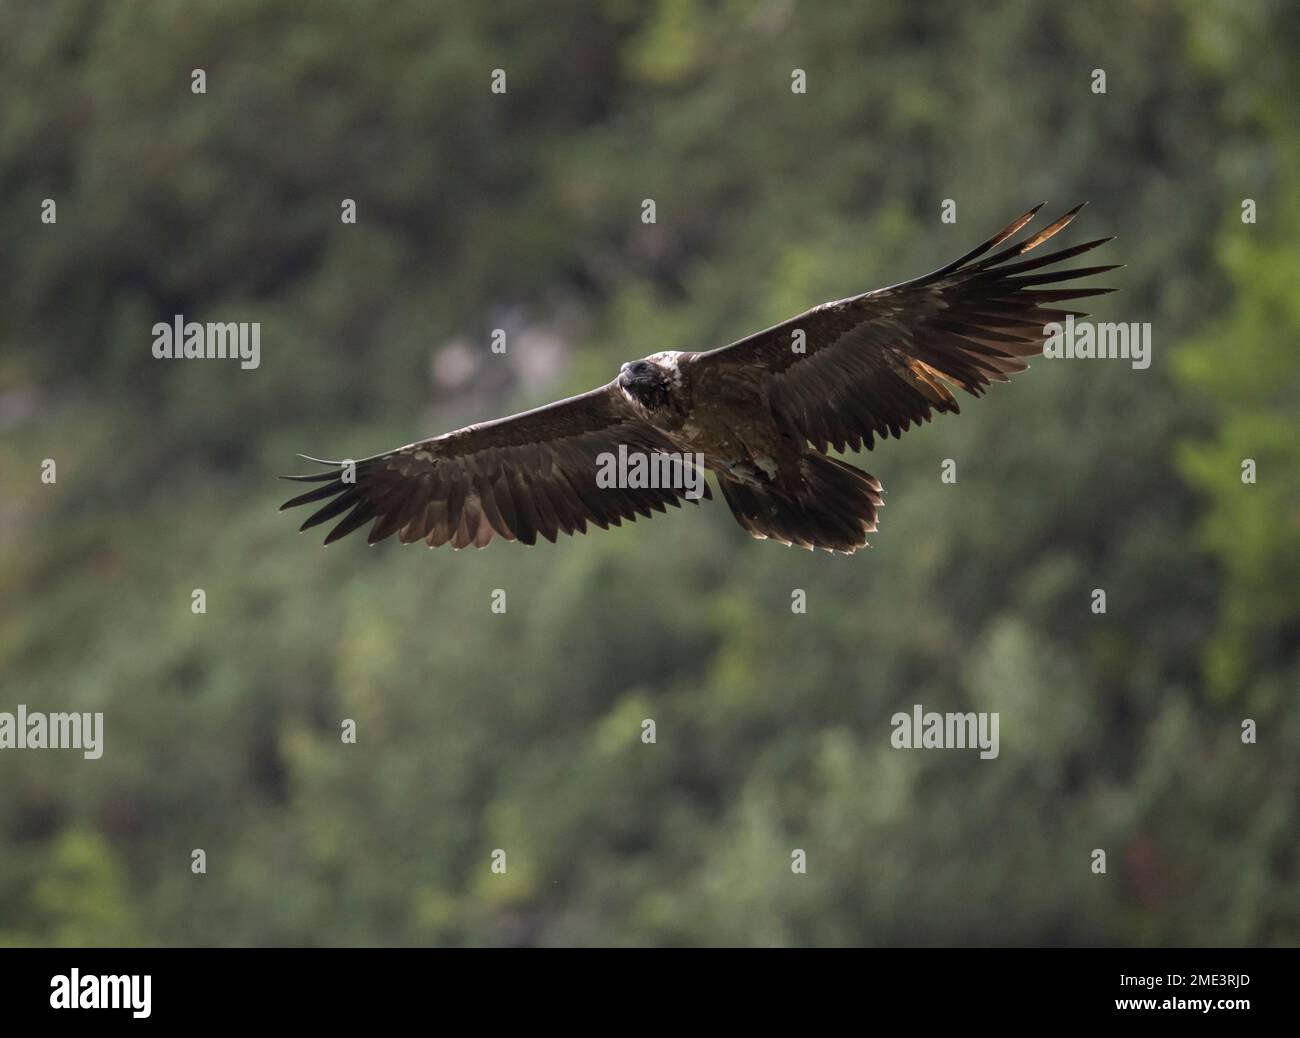 Avvoltoio bearato che vola in aria con ali sparse Foto Stock